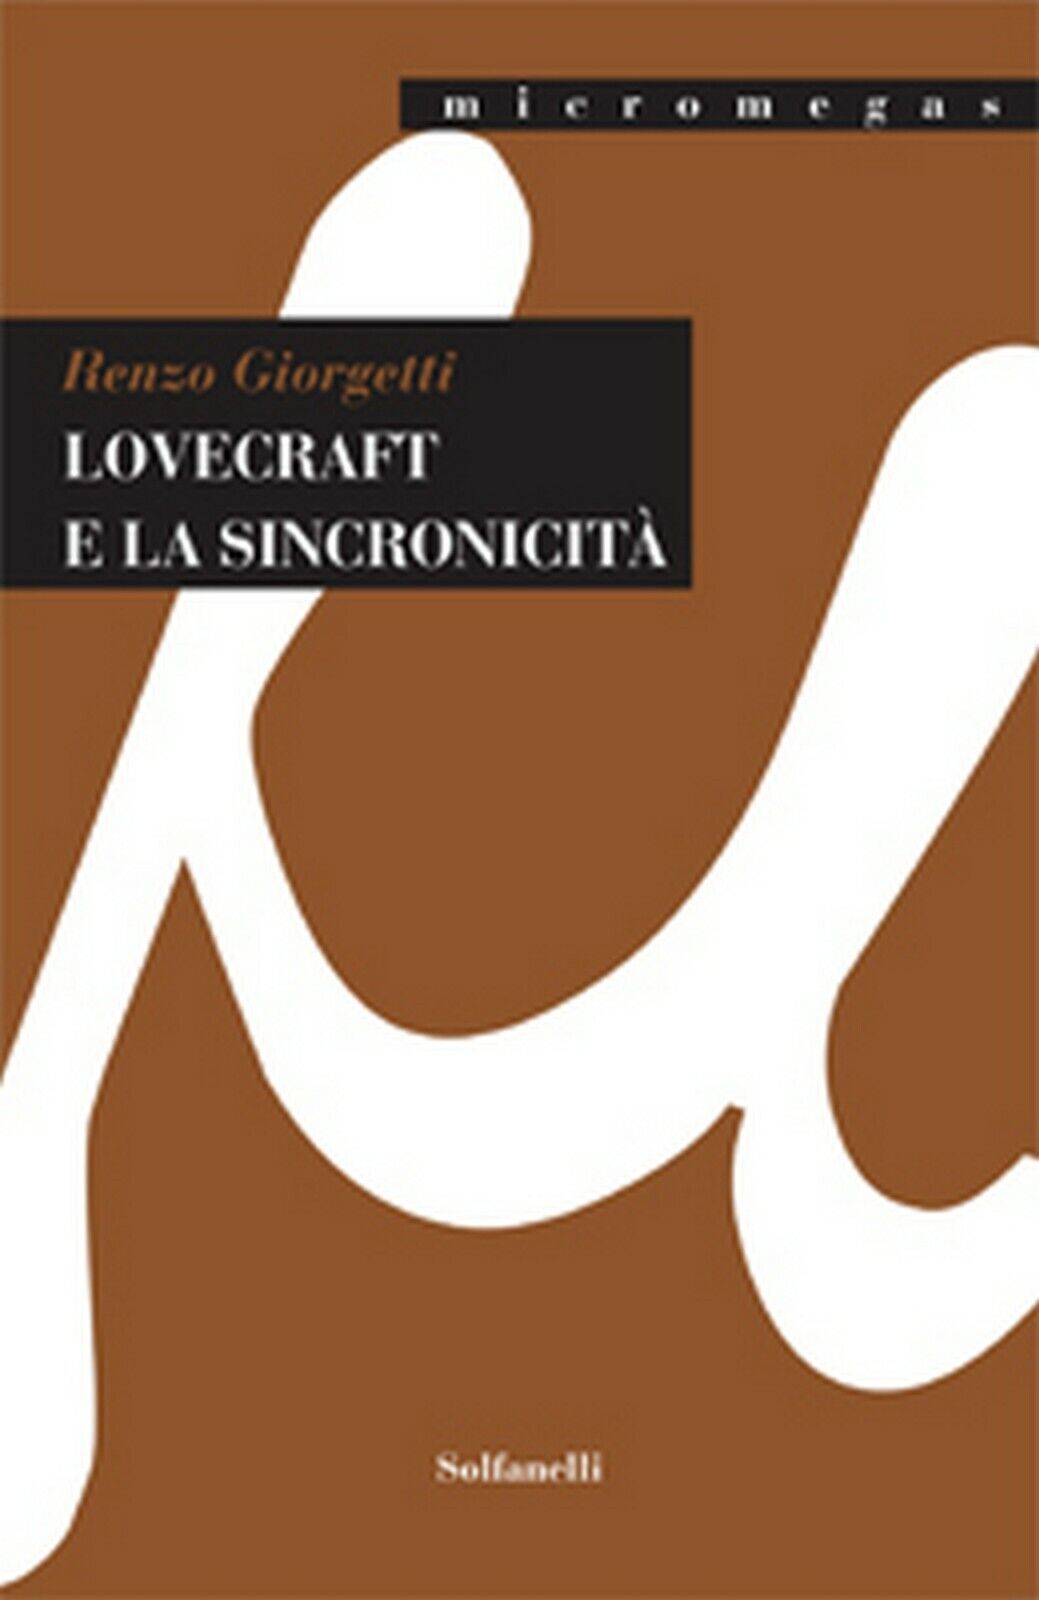 LOVECRAFT E LA SINCRONICIT?  di Renzo Giorgetti,  Solfanelli Edizioni